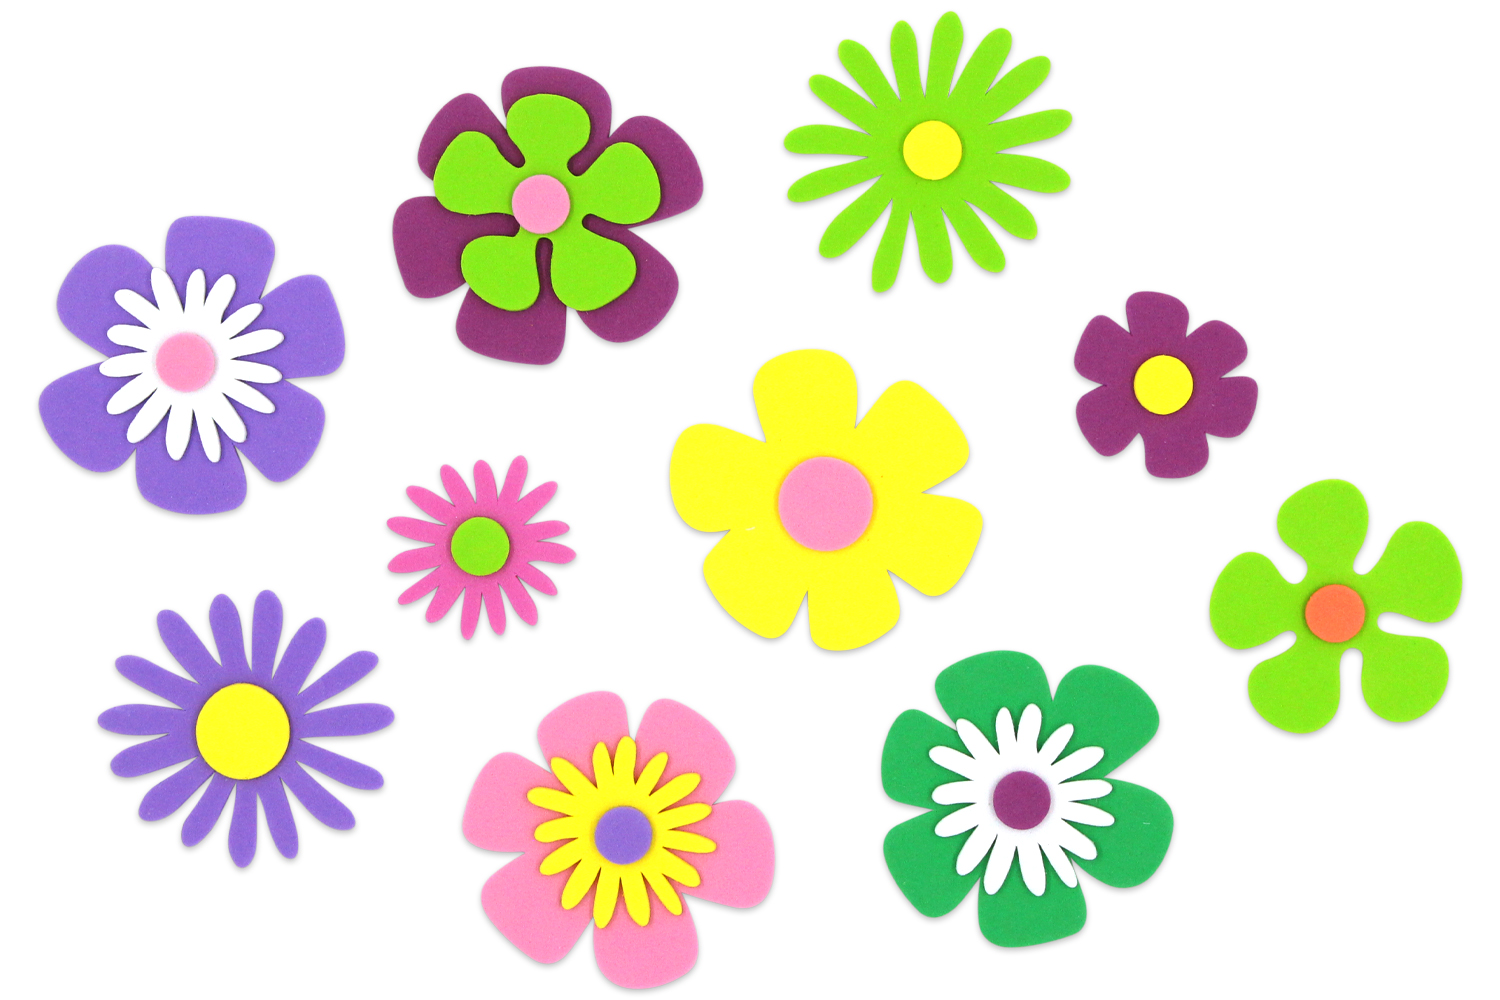 Stickers fleurs en caoutchouc mousse - 400 pcs - Fleurs et feuilles  décoratives - 10 Doigts